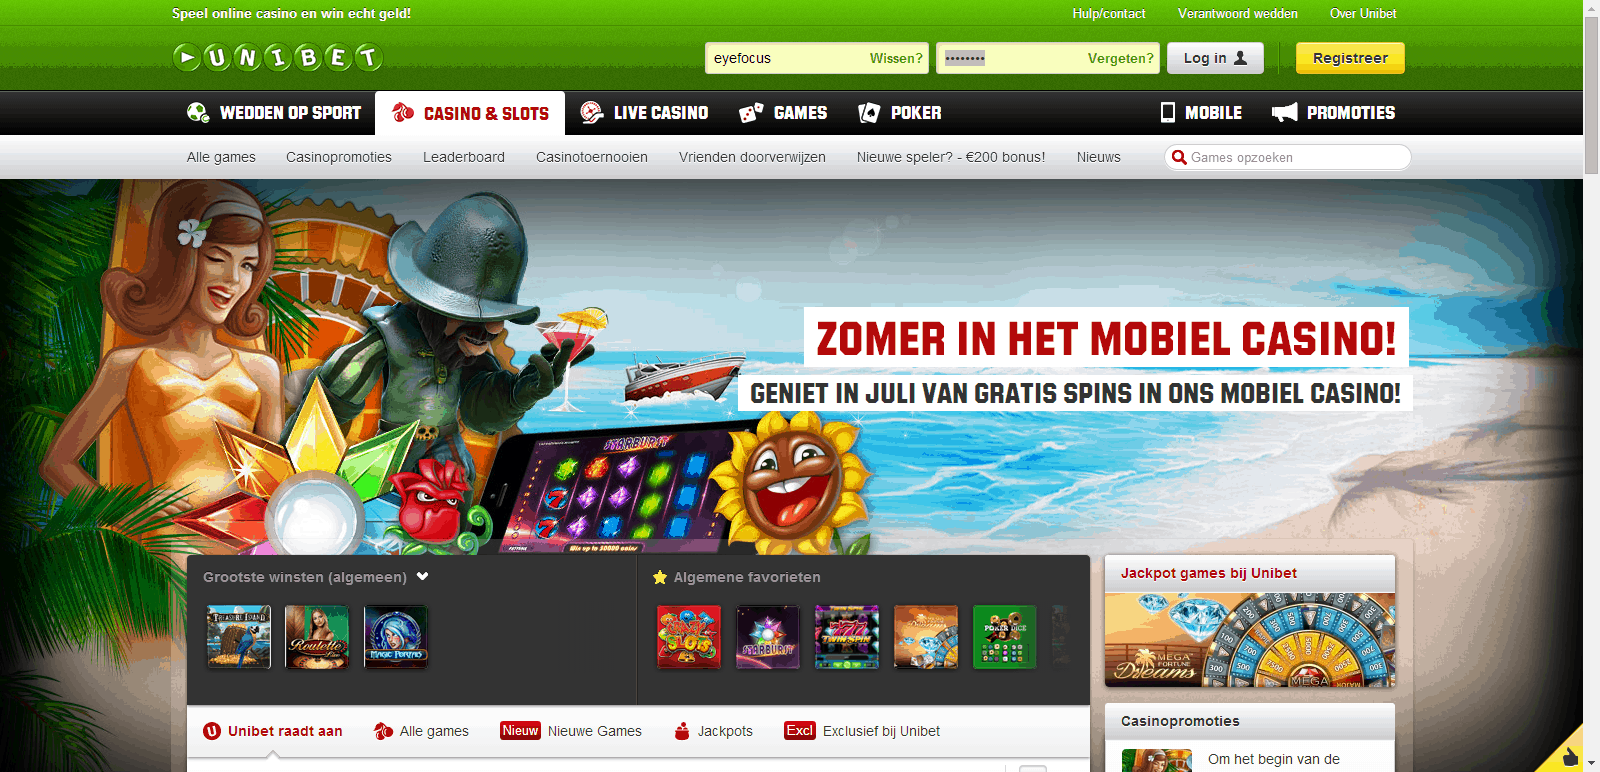 Unibet Online Casino